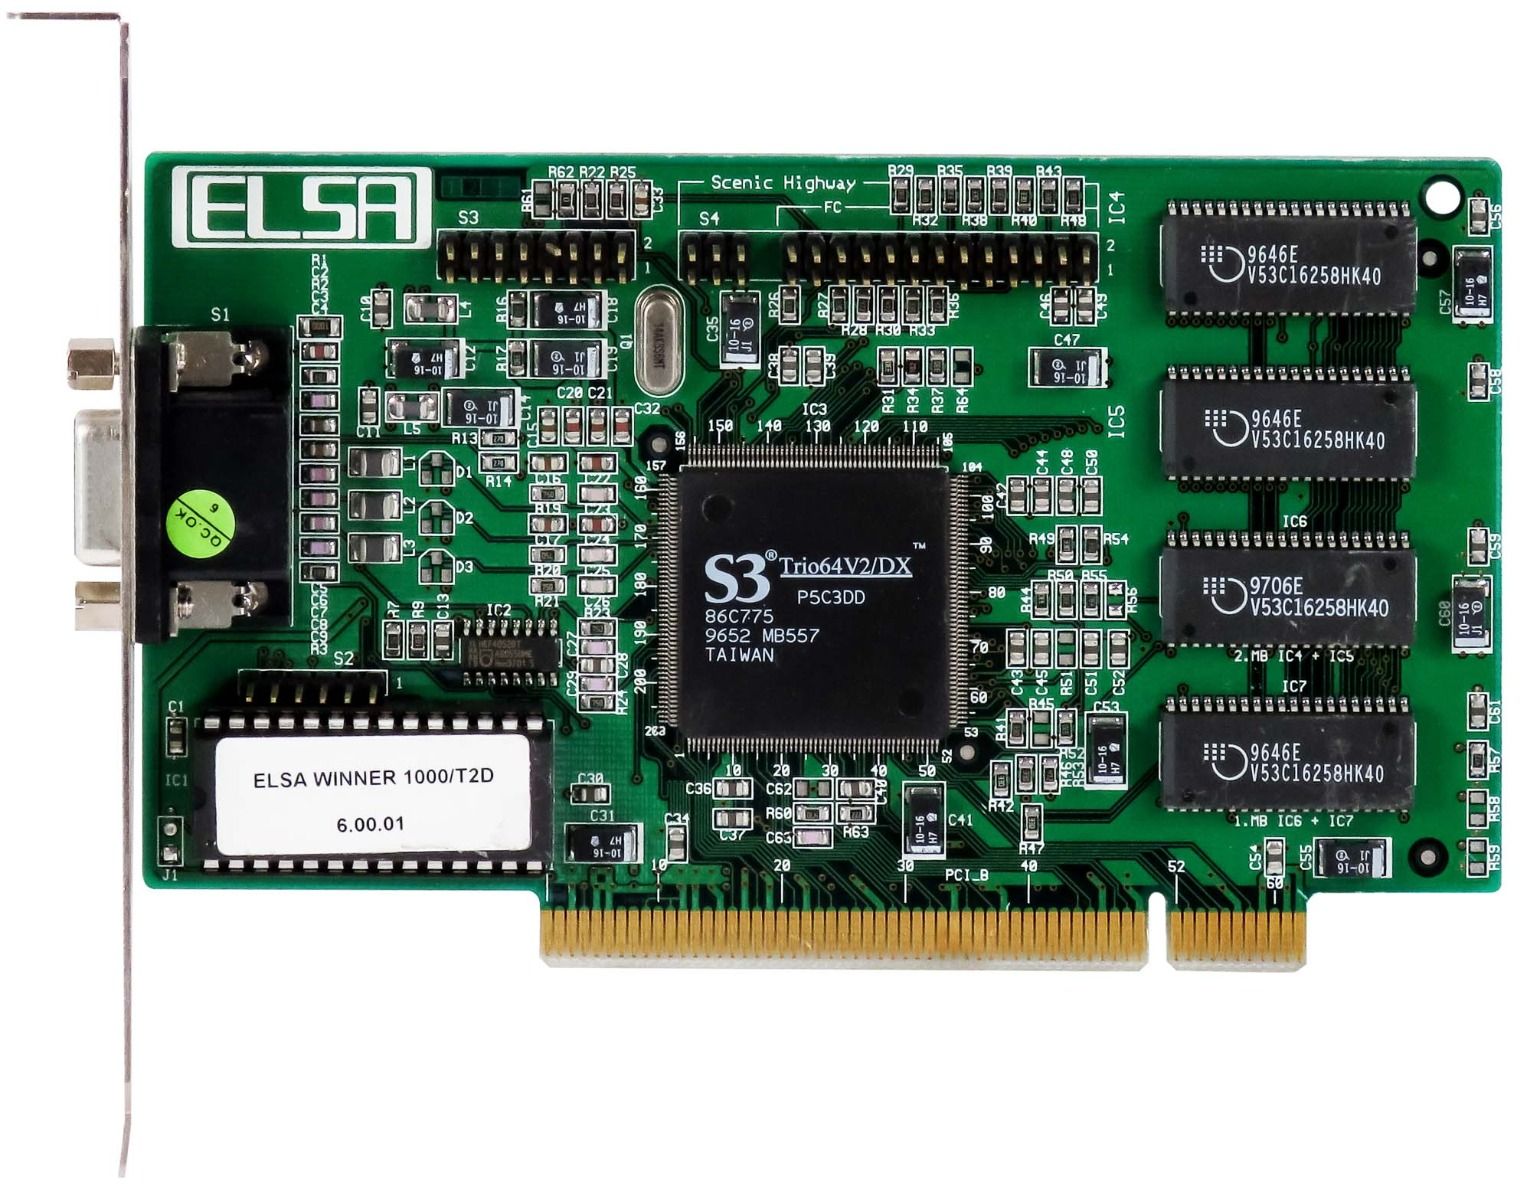 ELSA S3 TRIO64V2/DX 2MB VINCITORE 1000/T2D-2 PCI